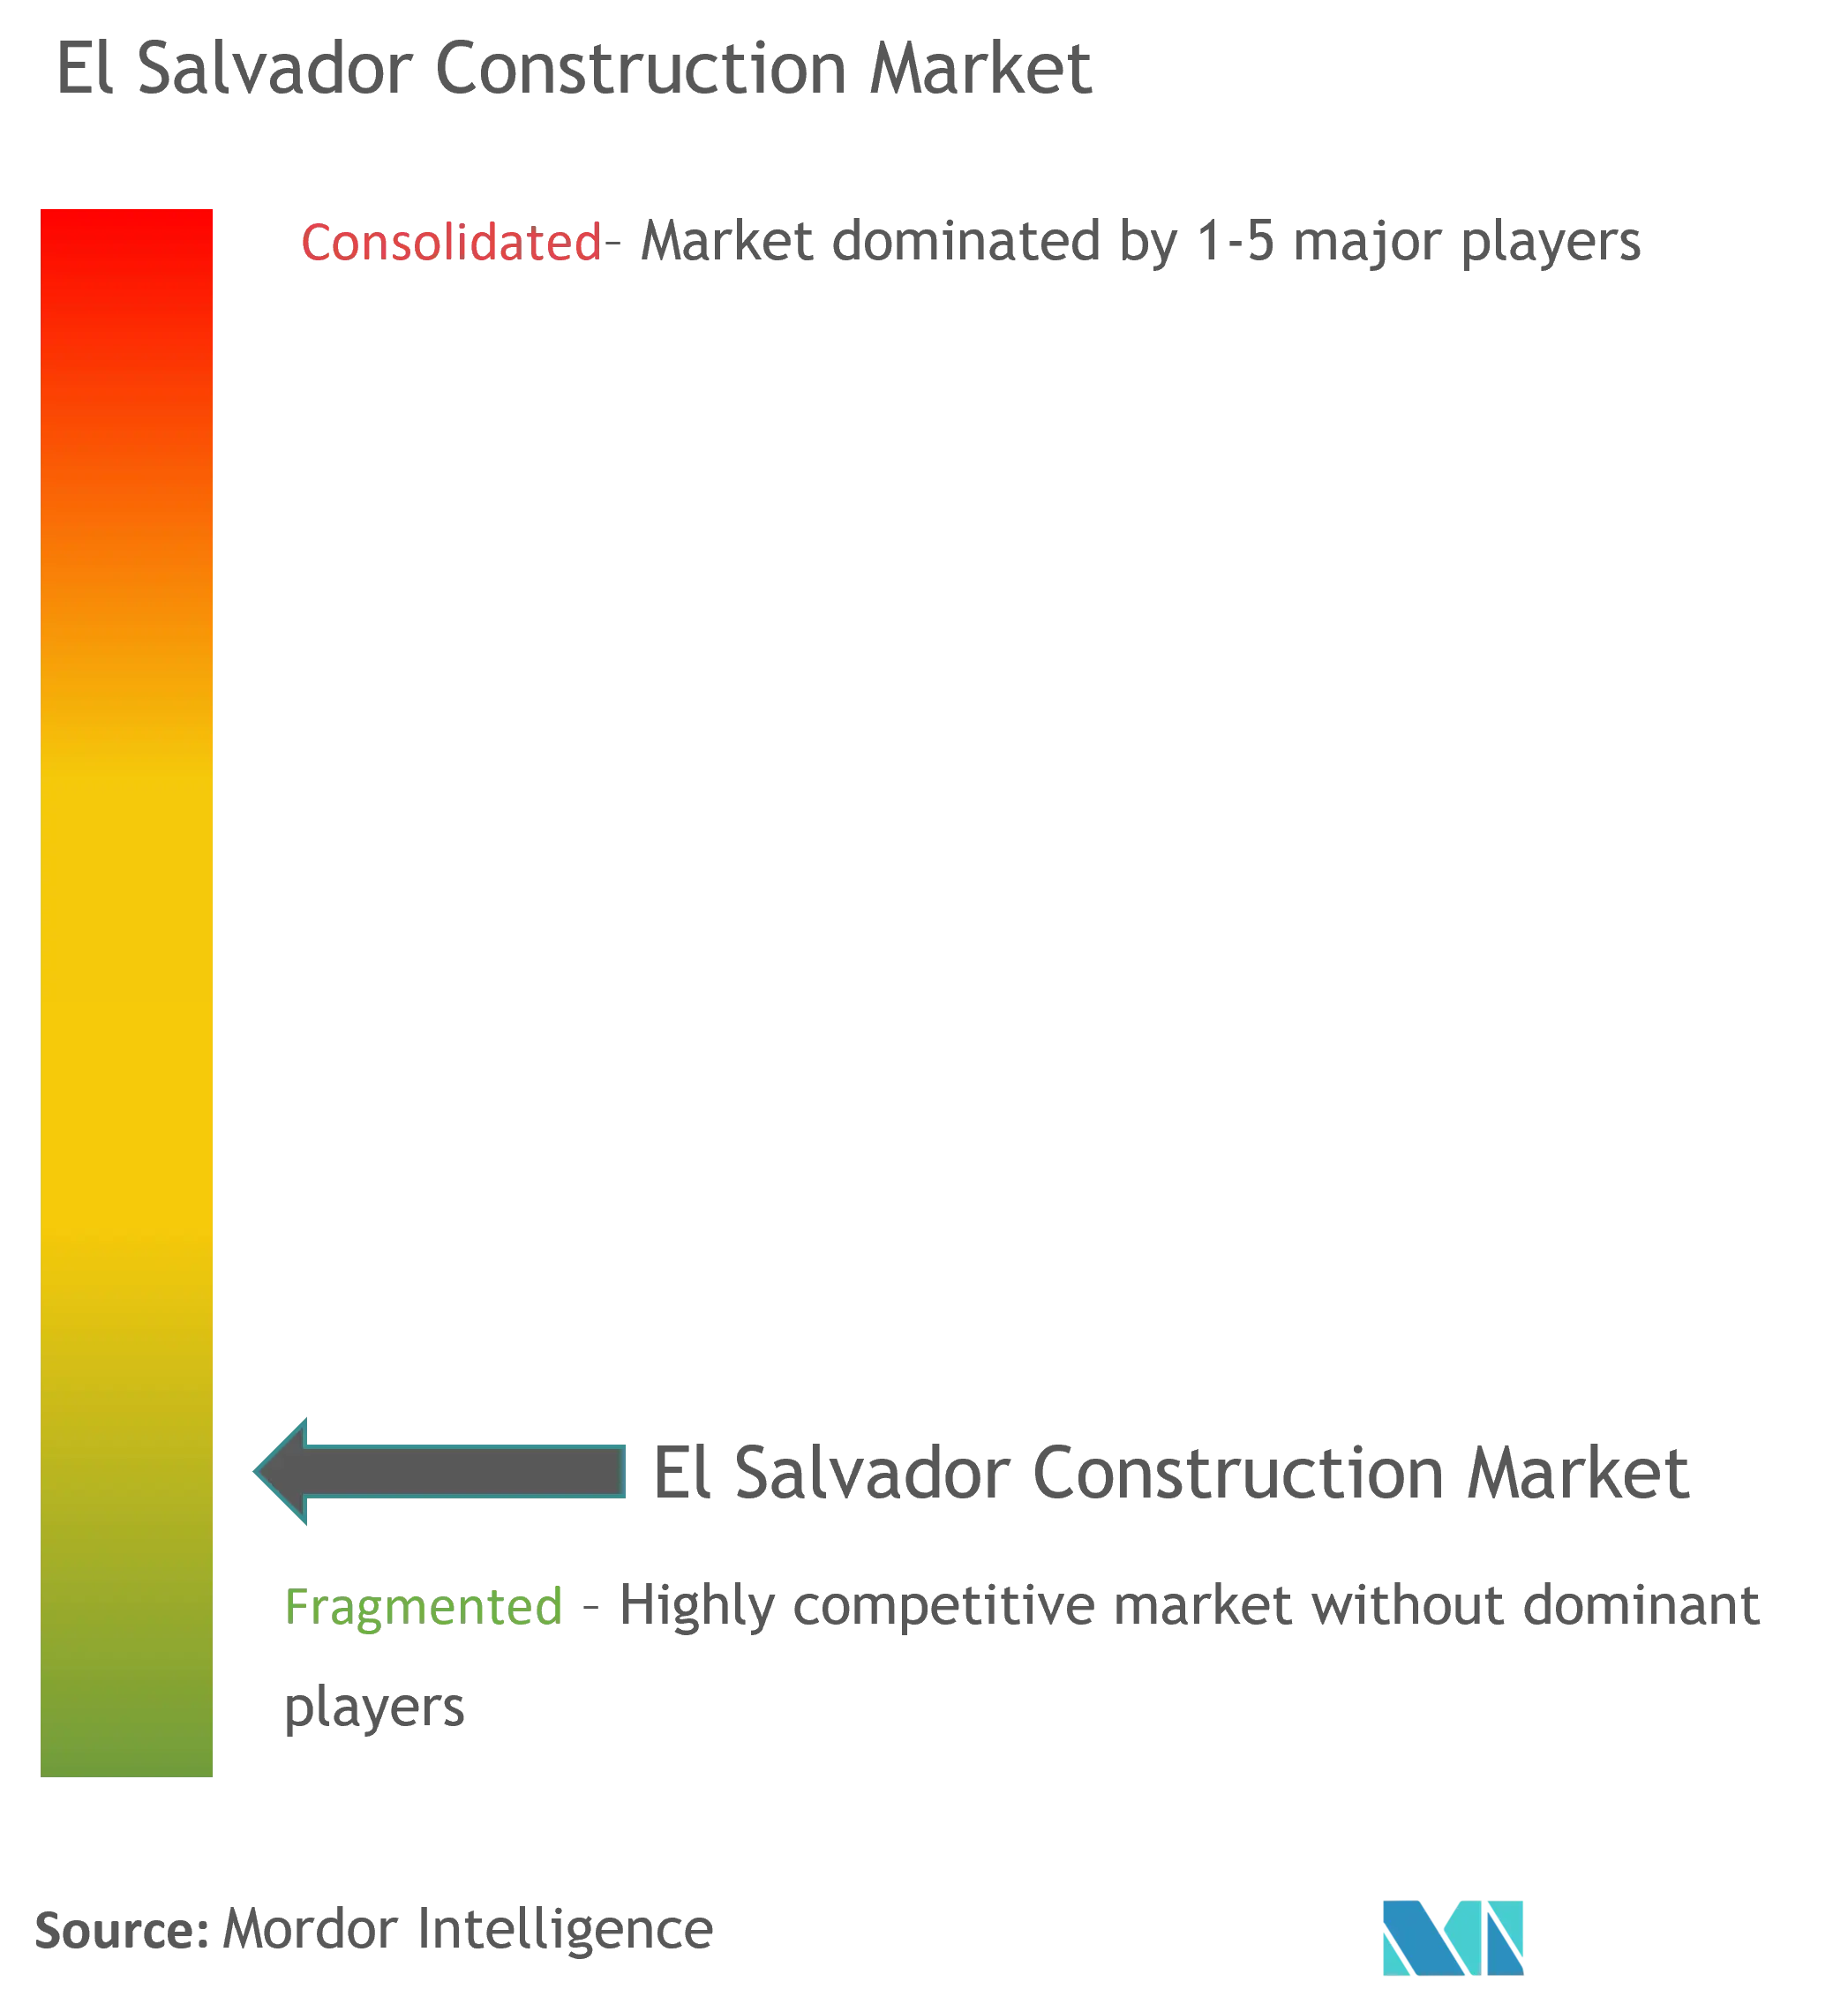 El Salvador Construction Market Concentration